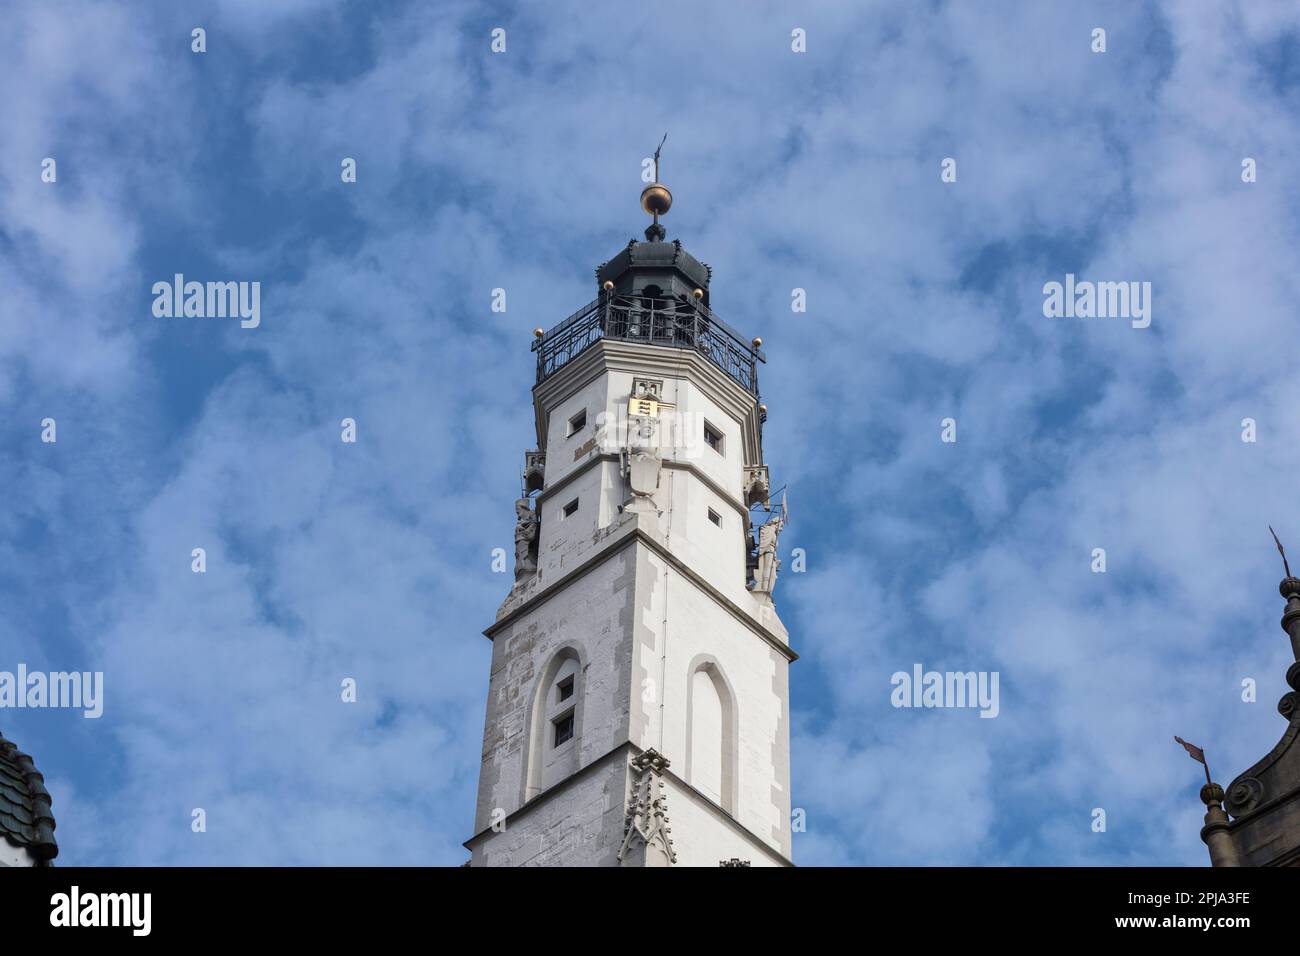 Torre de observación del ayuntamiento del siglo XIV - Rathaus - en estilo renacentista y gótico - en la plaza del mercado Marktplatz, Ciudad Vieja, Altstadt, Rothenburg. Foto de stock